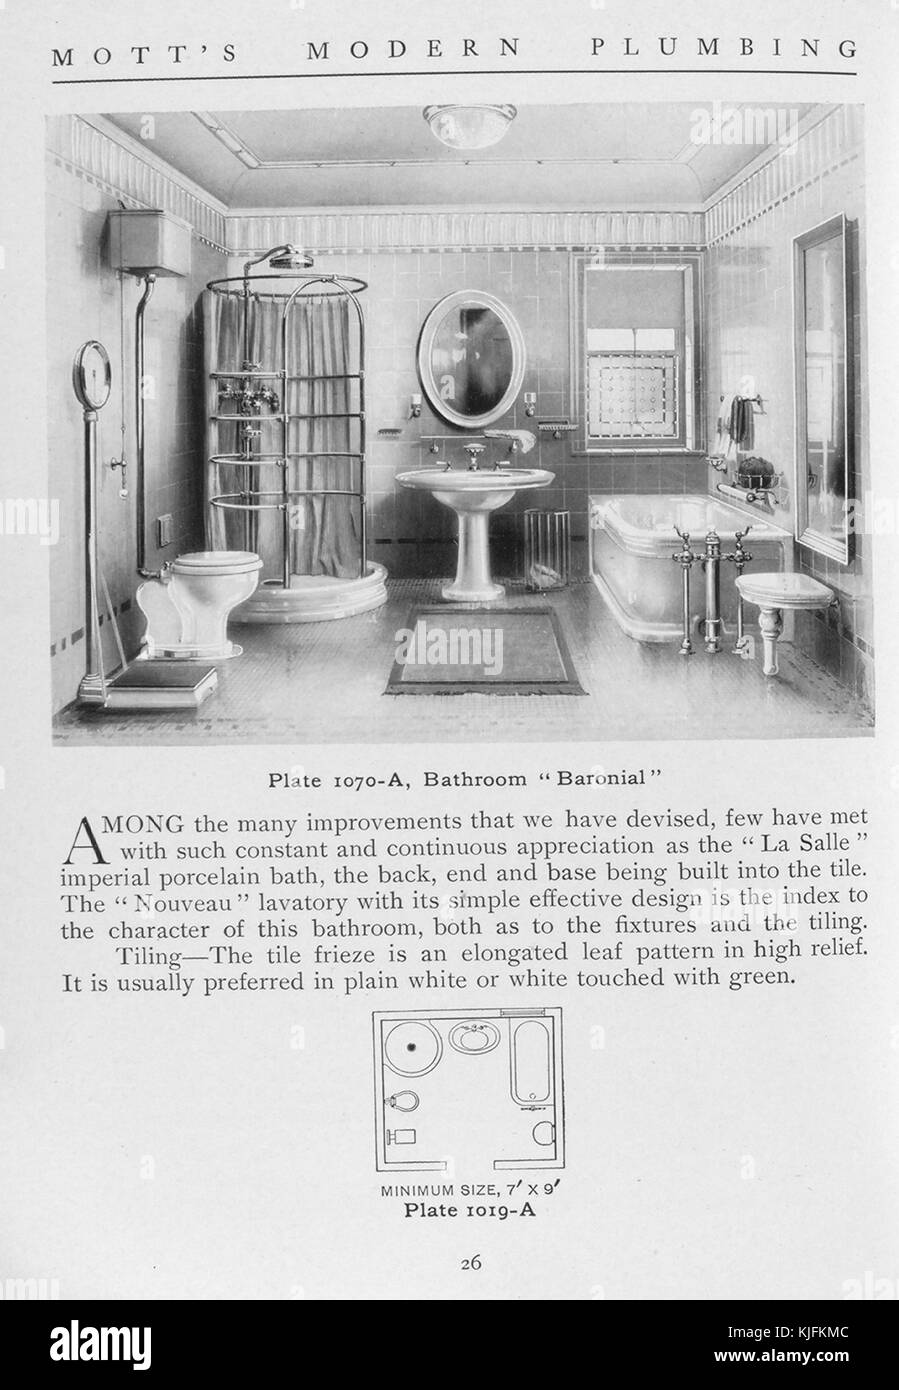 Salle de bains, style baronnial, 1911. à partir de la bibliothèque publique de New York. Cette plaque est de motts plomberie moderne, un catalogue illustrant différents styles d'accessoires de salle de bain. Banque D'Images